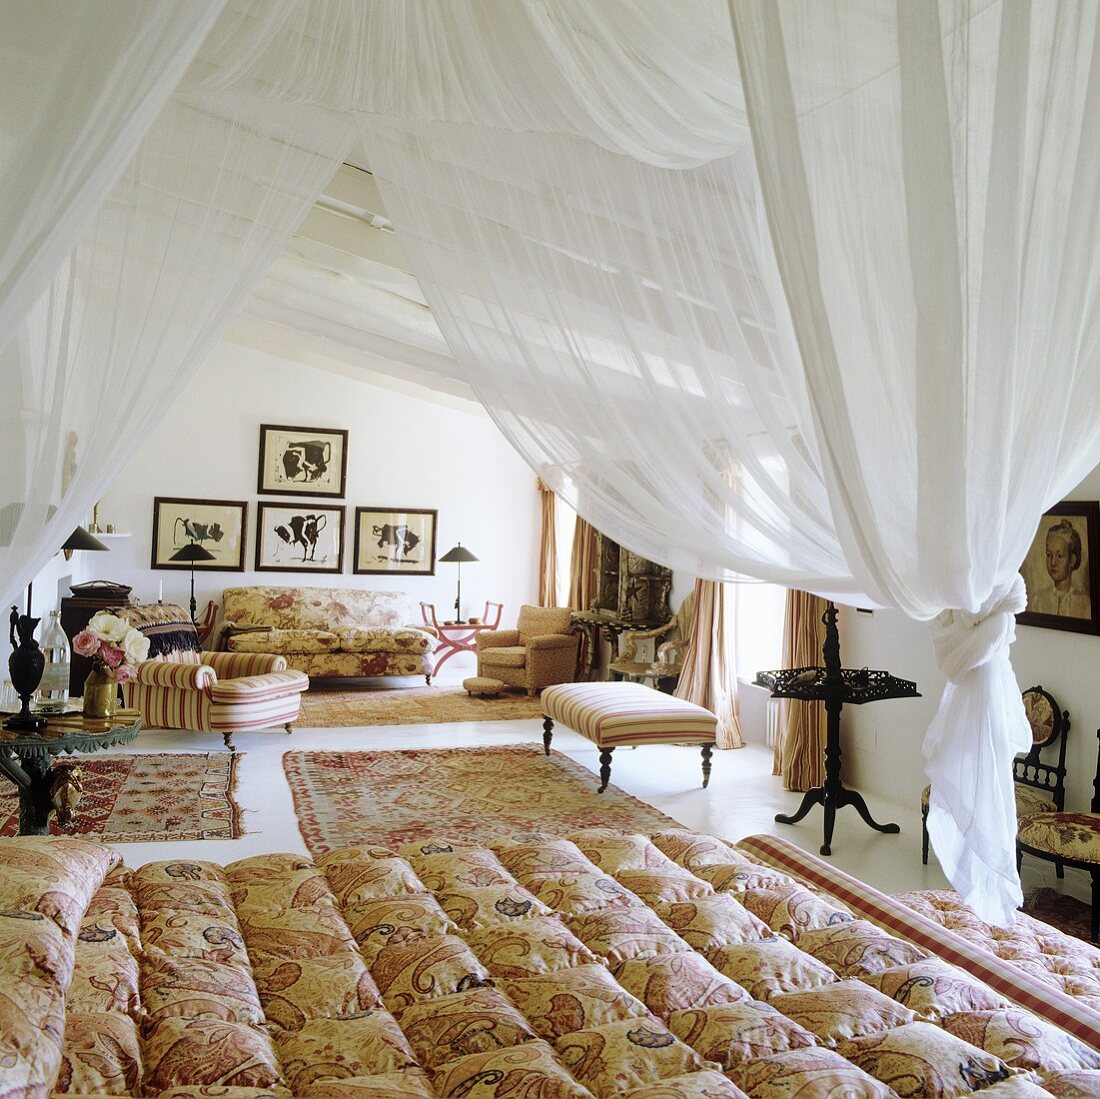 Weisser Stoffhimmel über Bett und elegante Sitzmöbel mit Teppichen im offenen Schlafraum